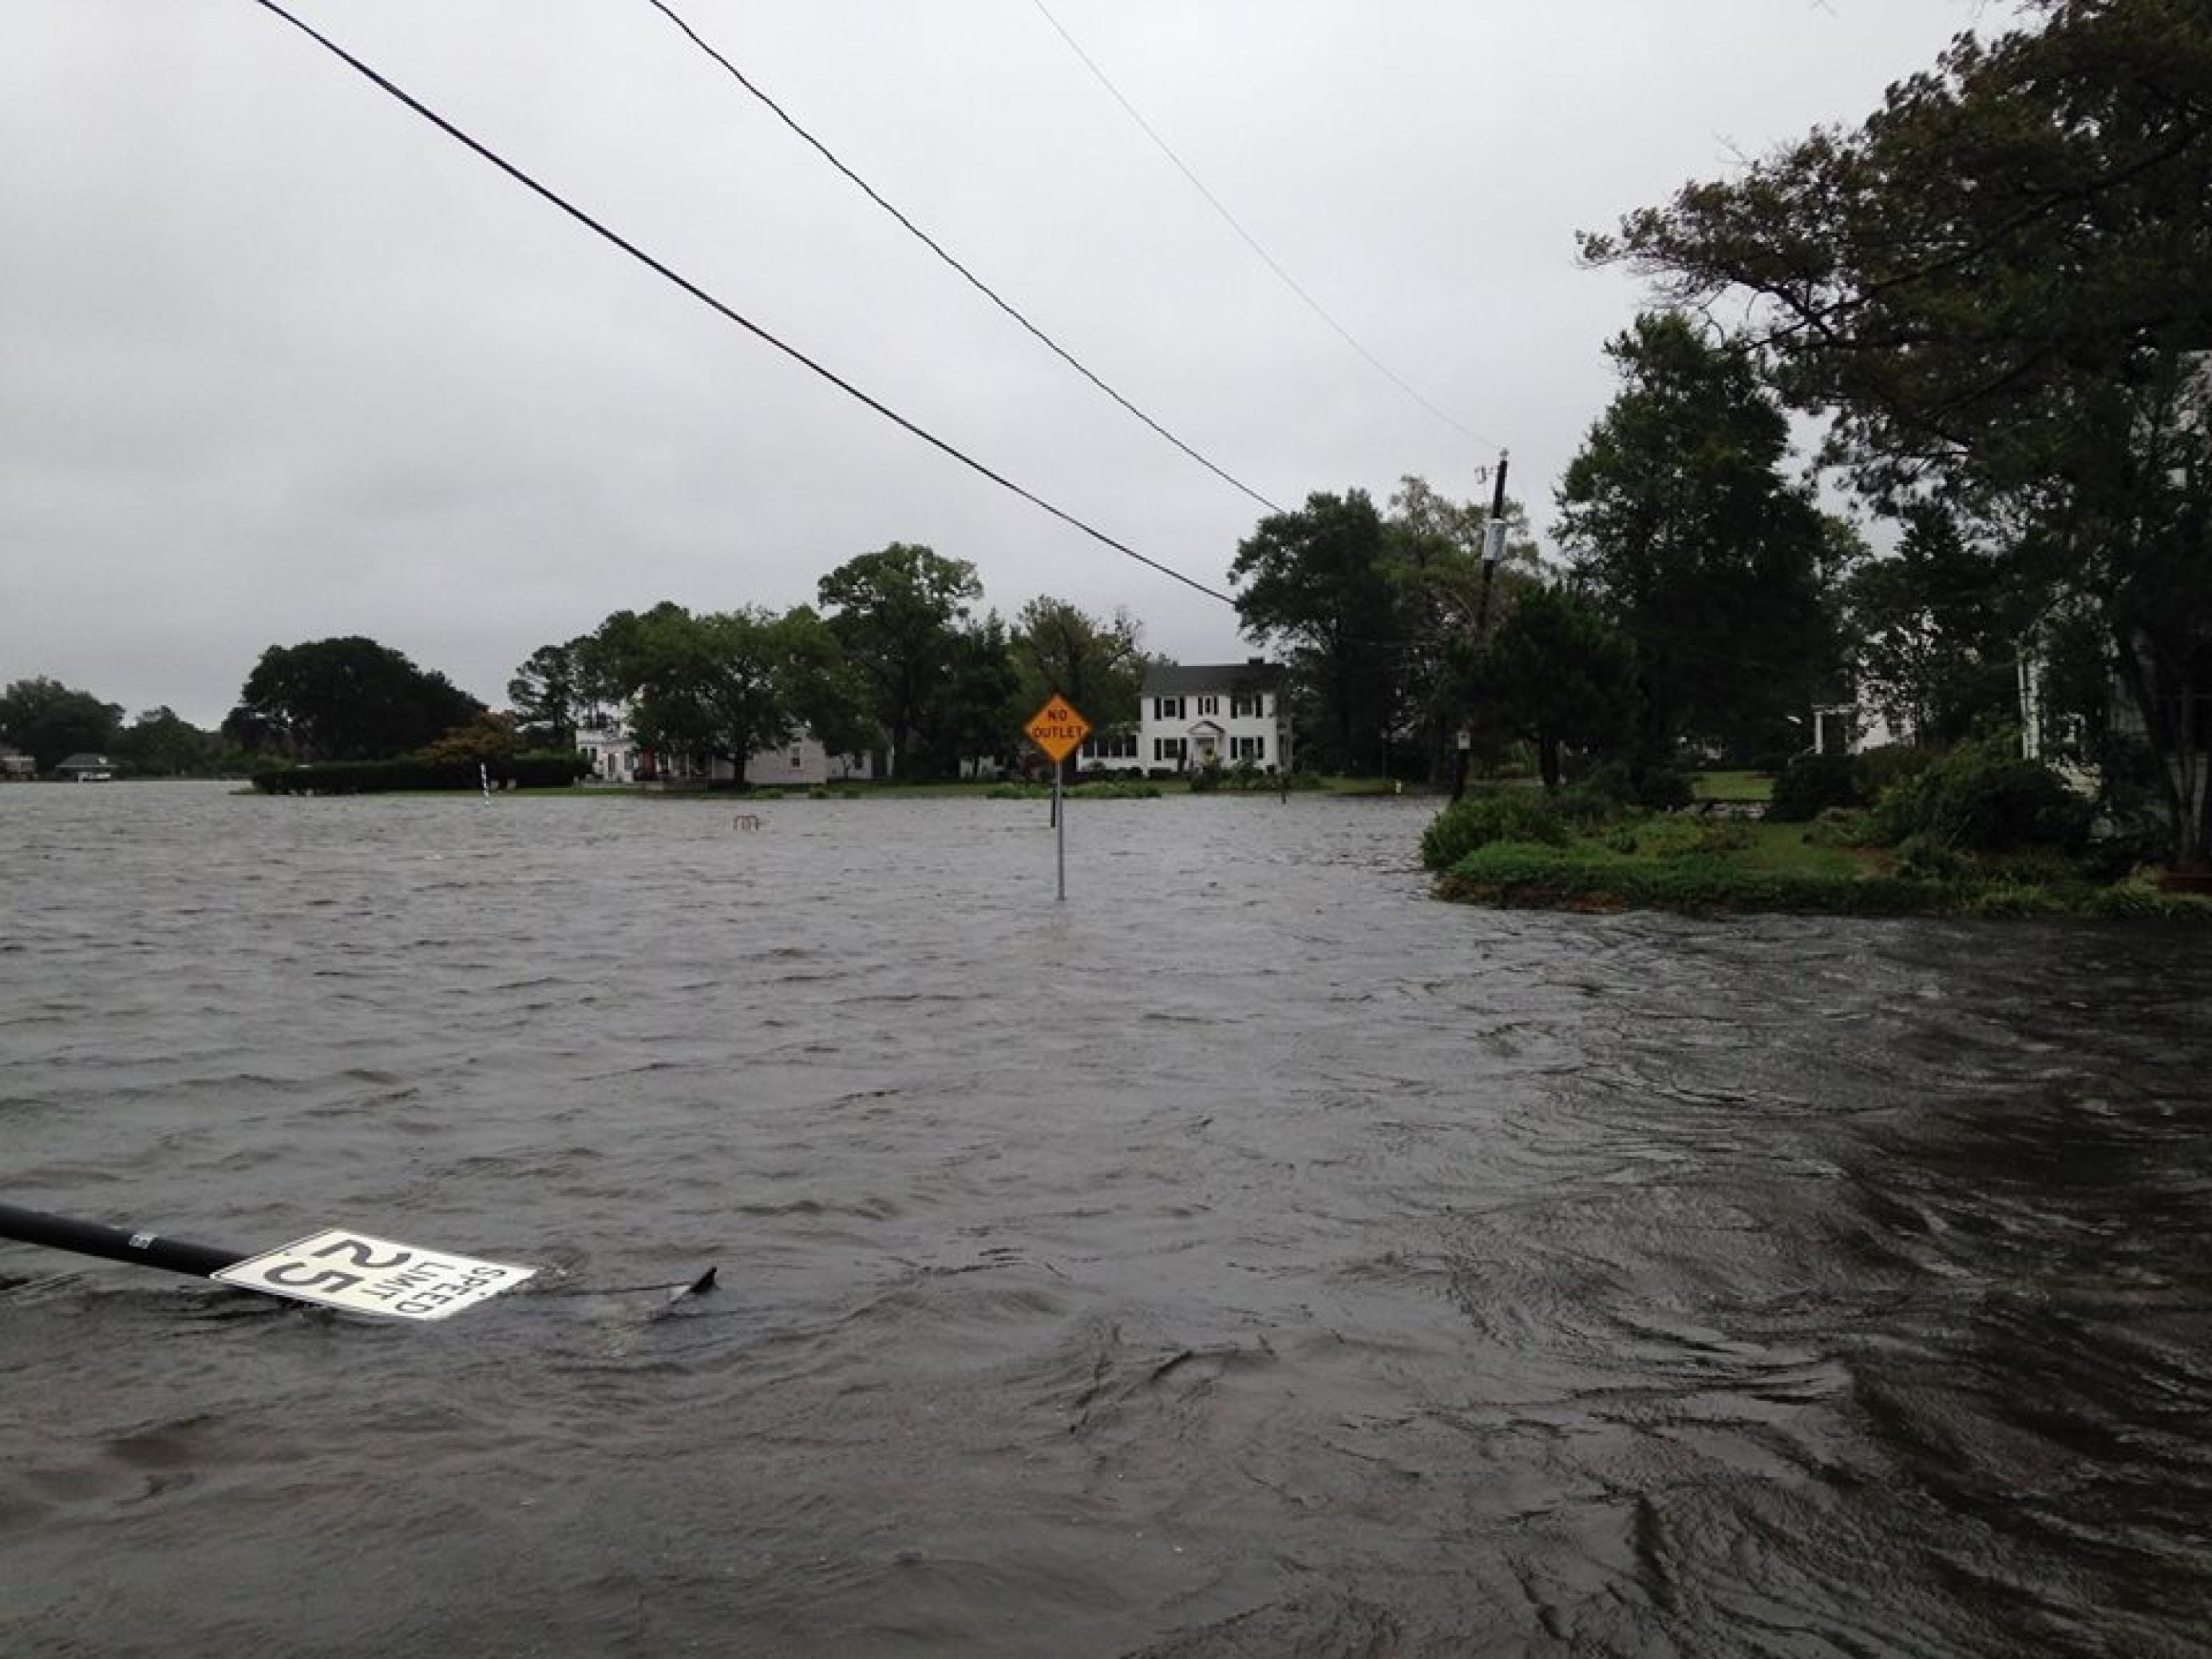 Eine überflutete Straße, im Wasser liegt ein umworbenes Verkehrsschild. Im Stadtteil Colonial Place von Norfolk/Virginia haben die Hausbesitzer nasse Füße statt Wasserblick.